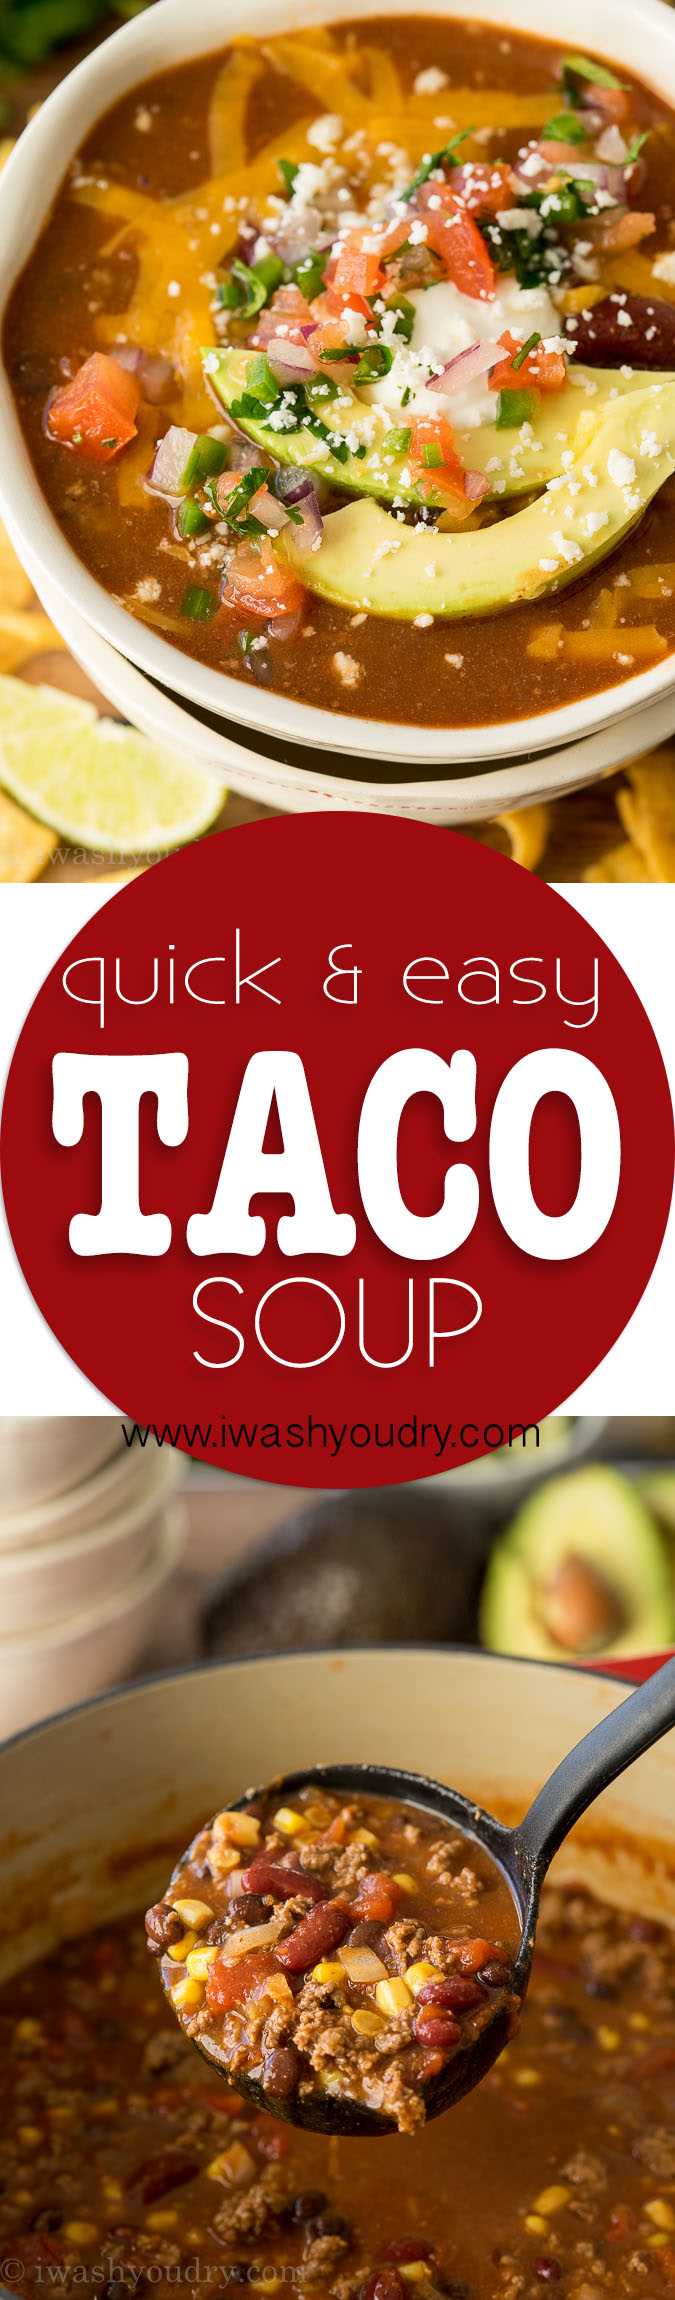 ¡Esta receta rápida y fácil de sopa de taco es la favorita de la familia! ¡Nos encanta cubrirlo con todos los ingredientes para tacos!